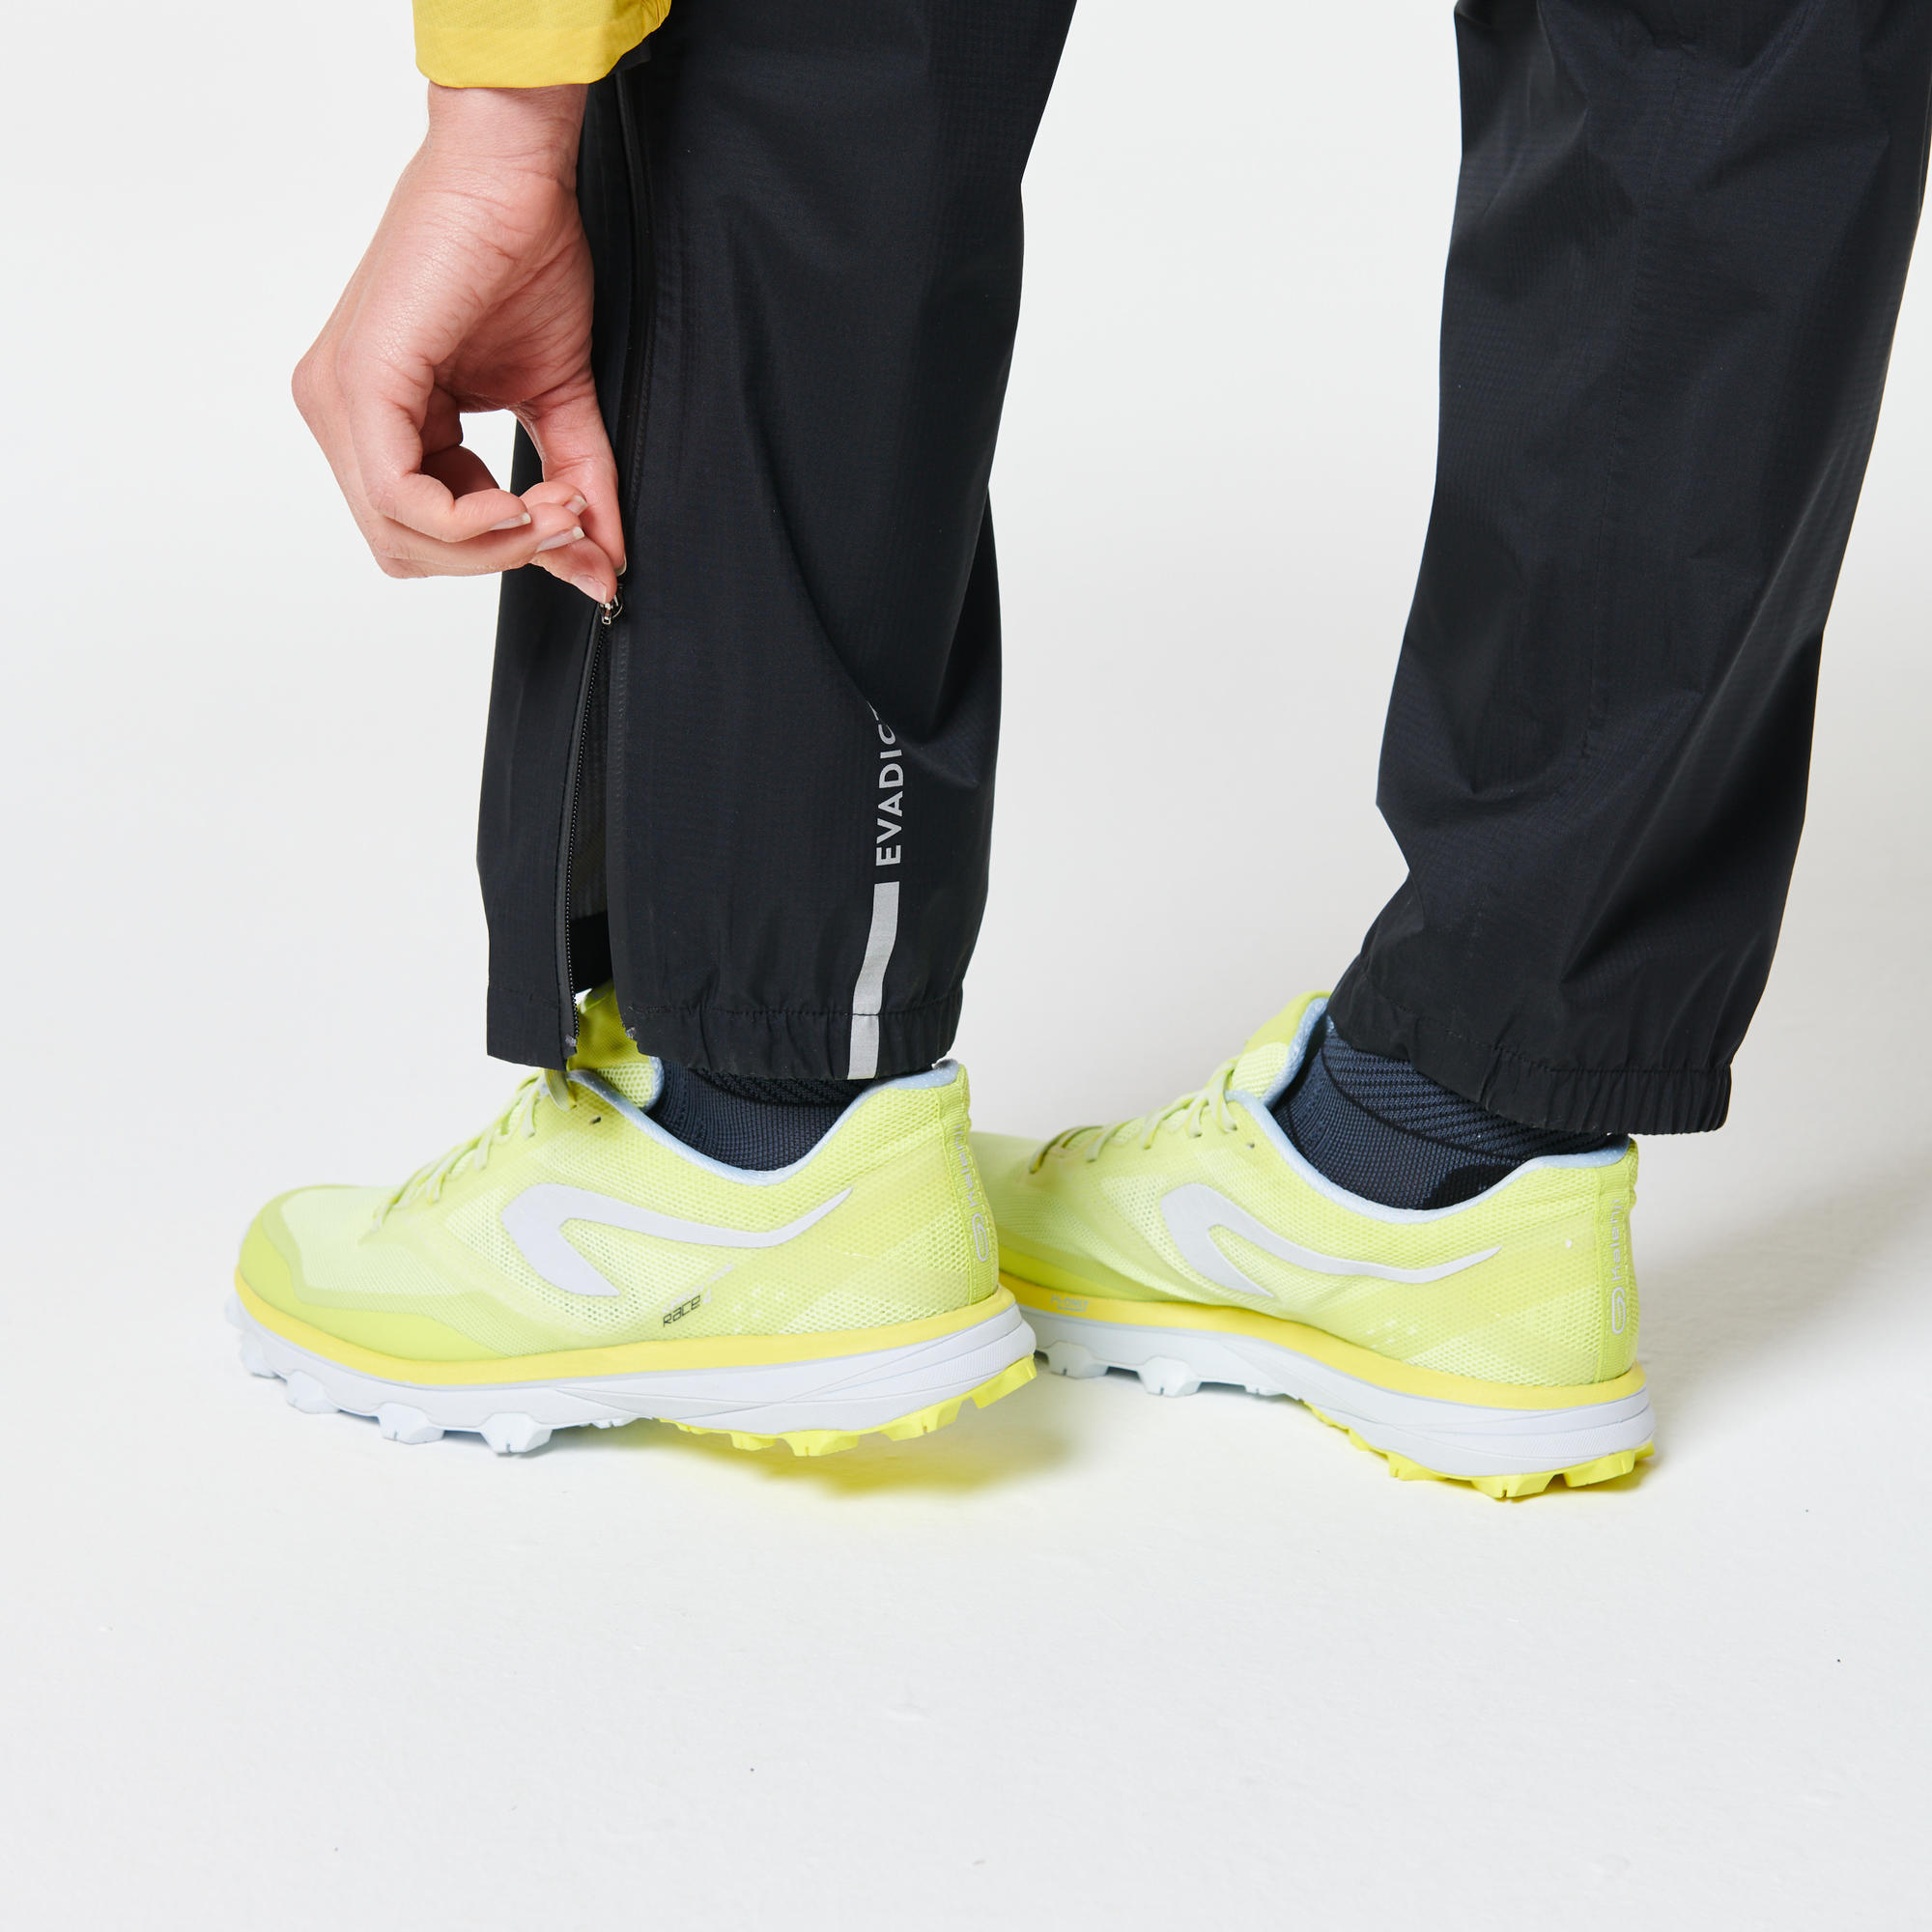 decathlon waterproof running trousers